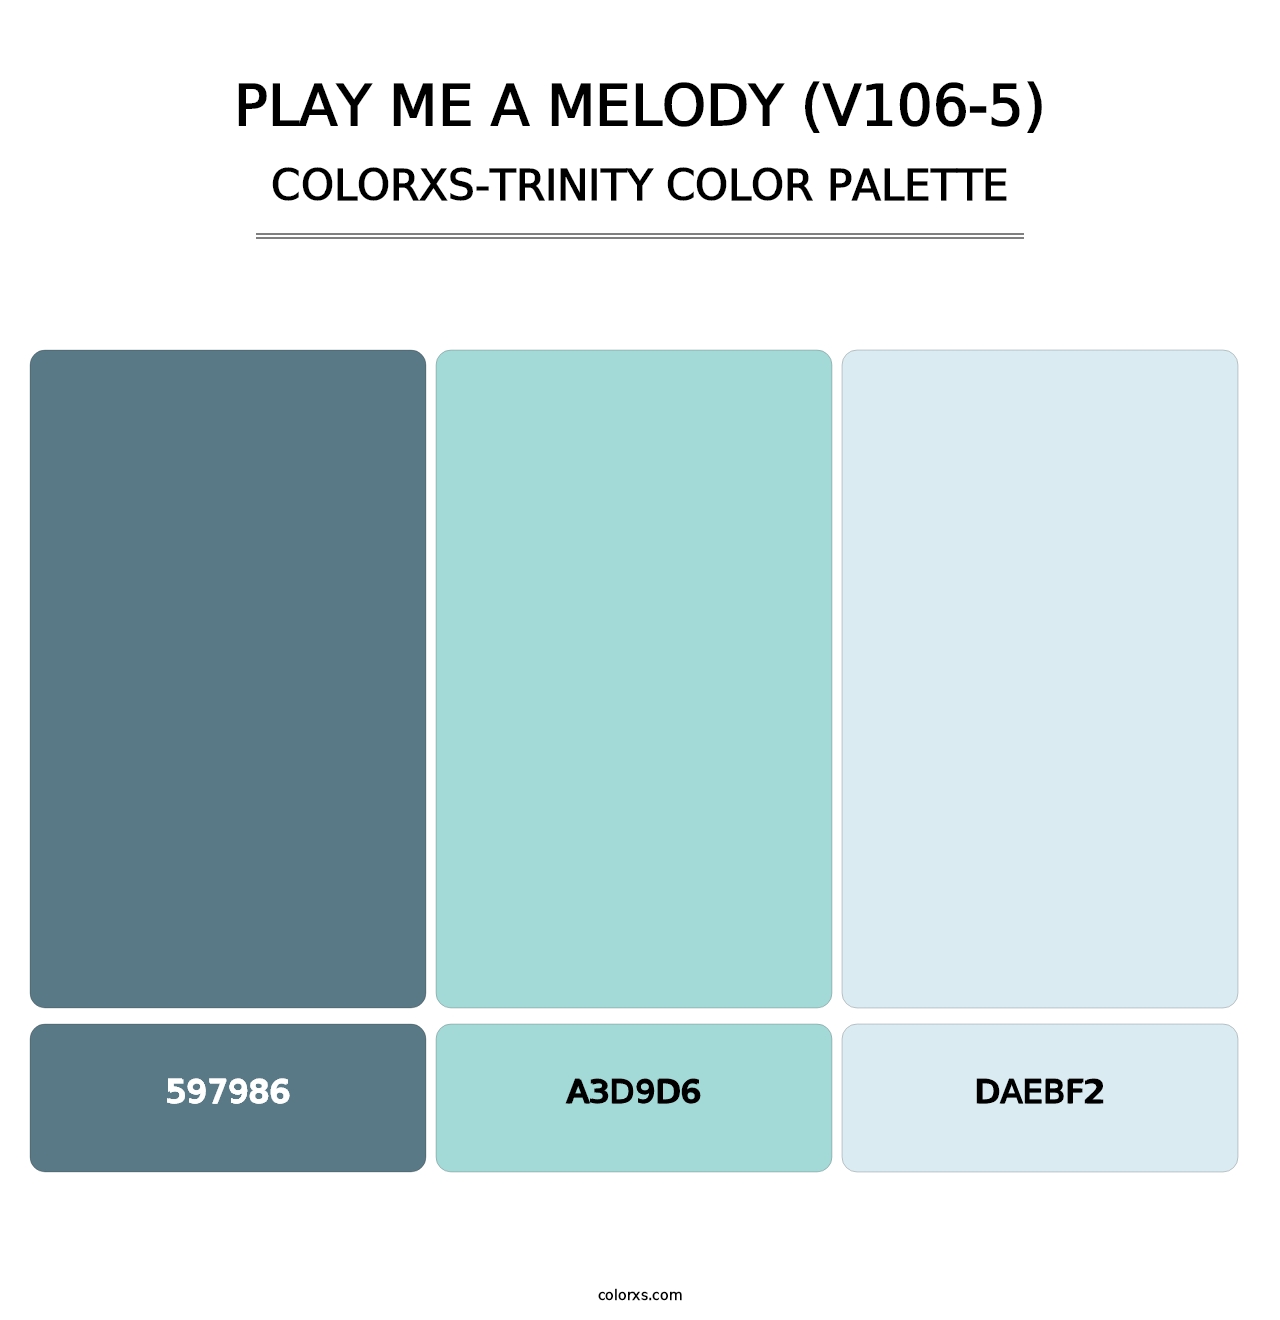 Play Me a Melody (V106-5) - Colorxs Trinity Palette